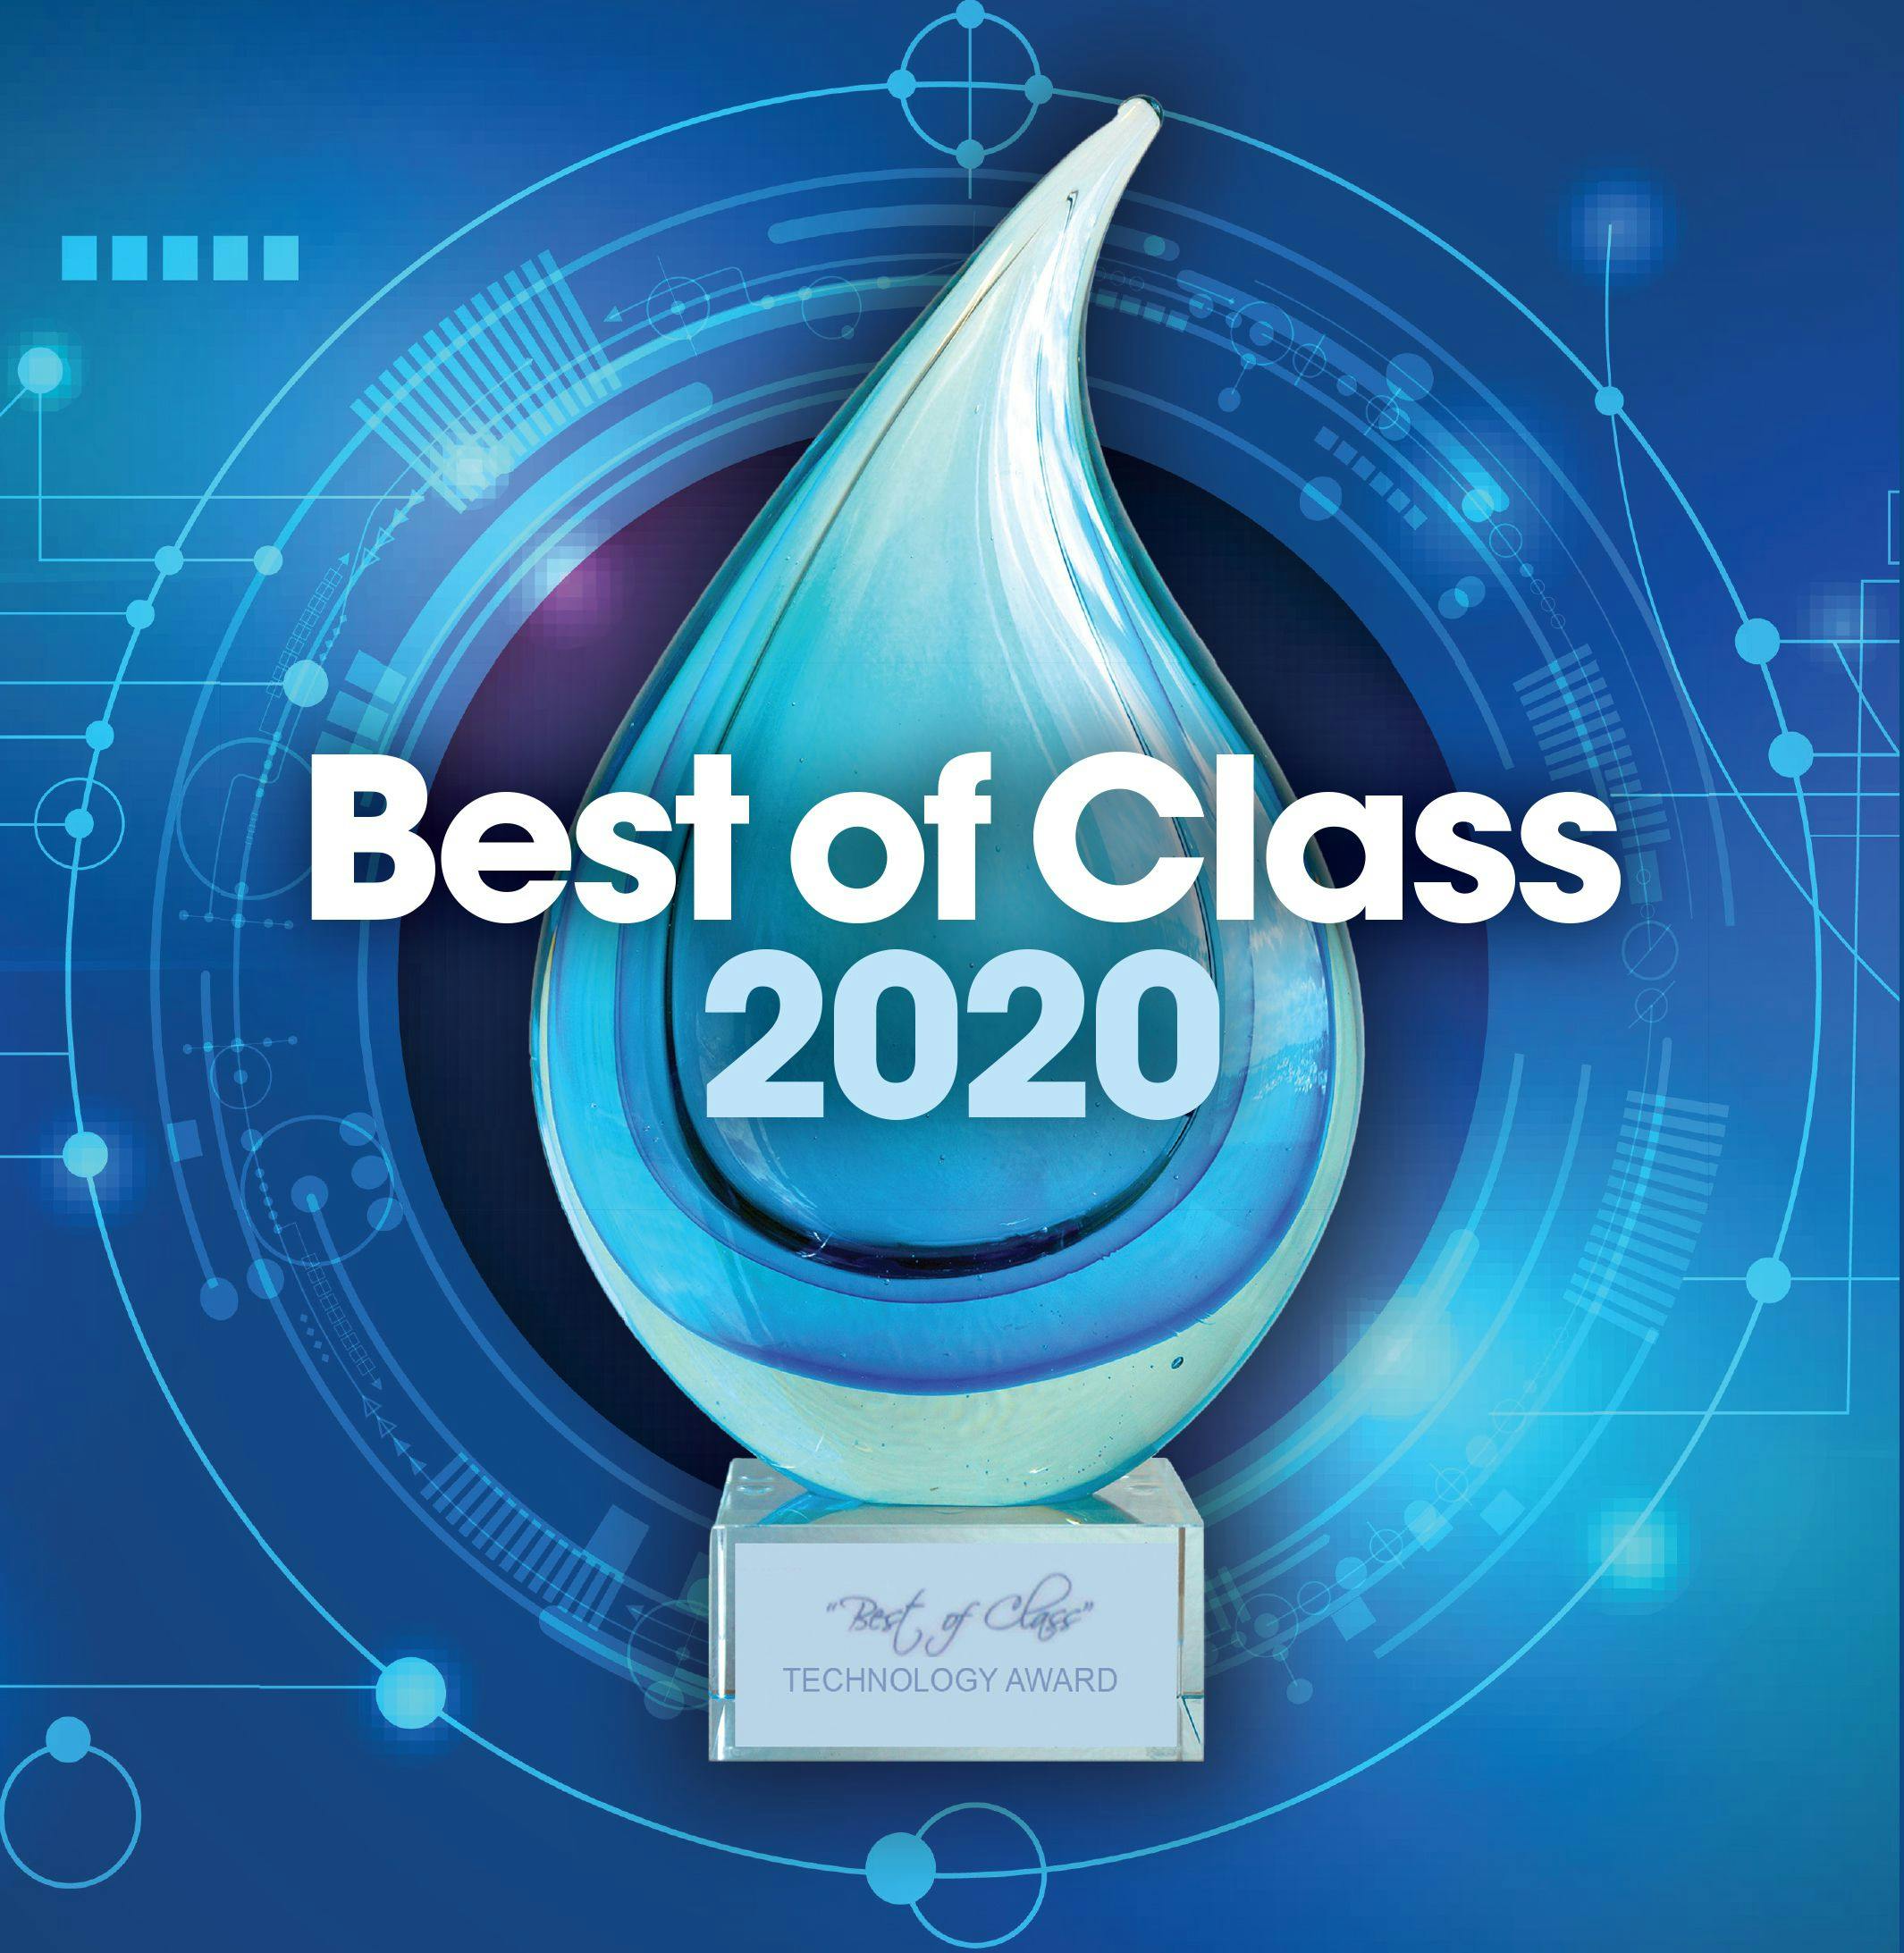 2020 Cellerant Best of Class Technology Awards